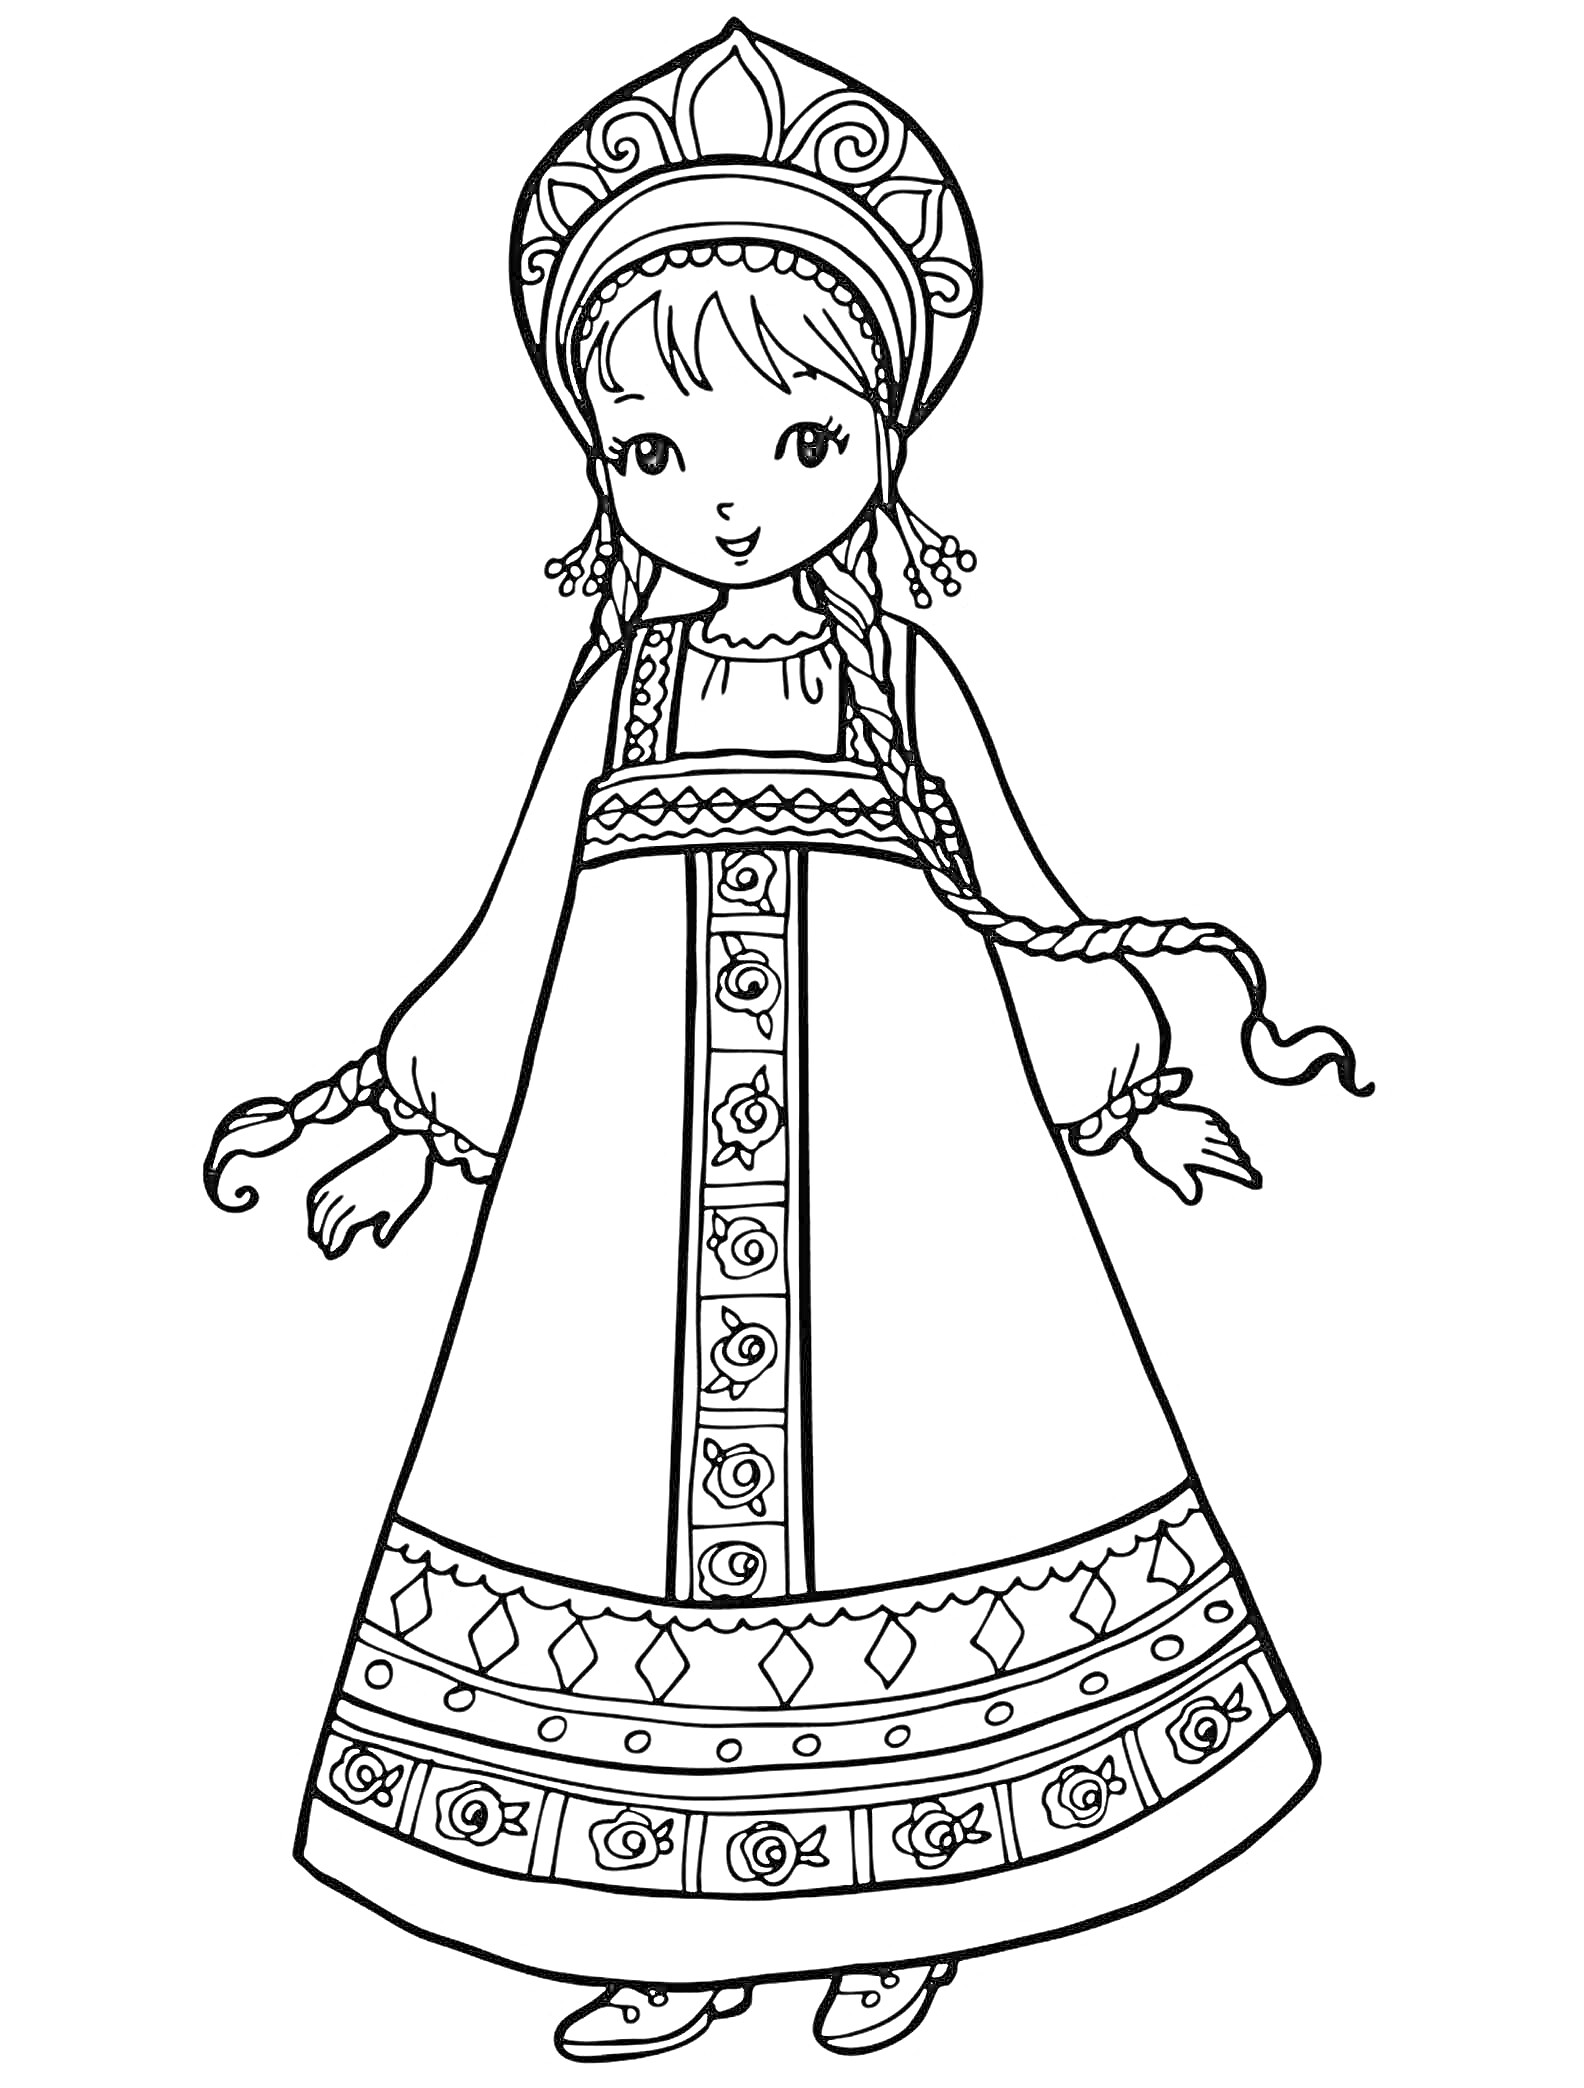 Кукла в традиционной народной одежде с кокошником, платьем с орнаментом и косичками